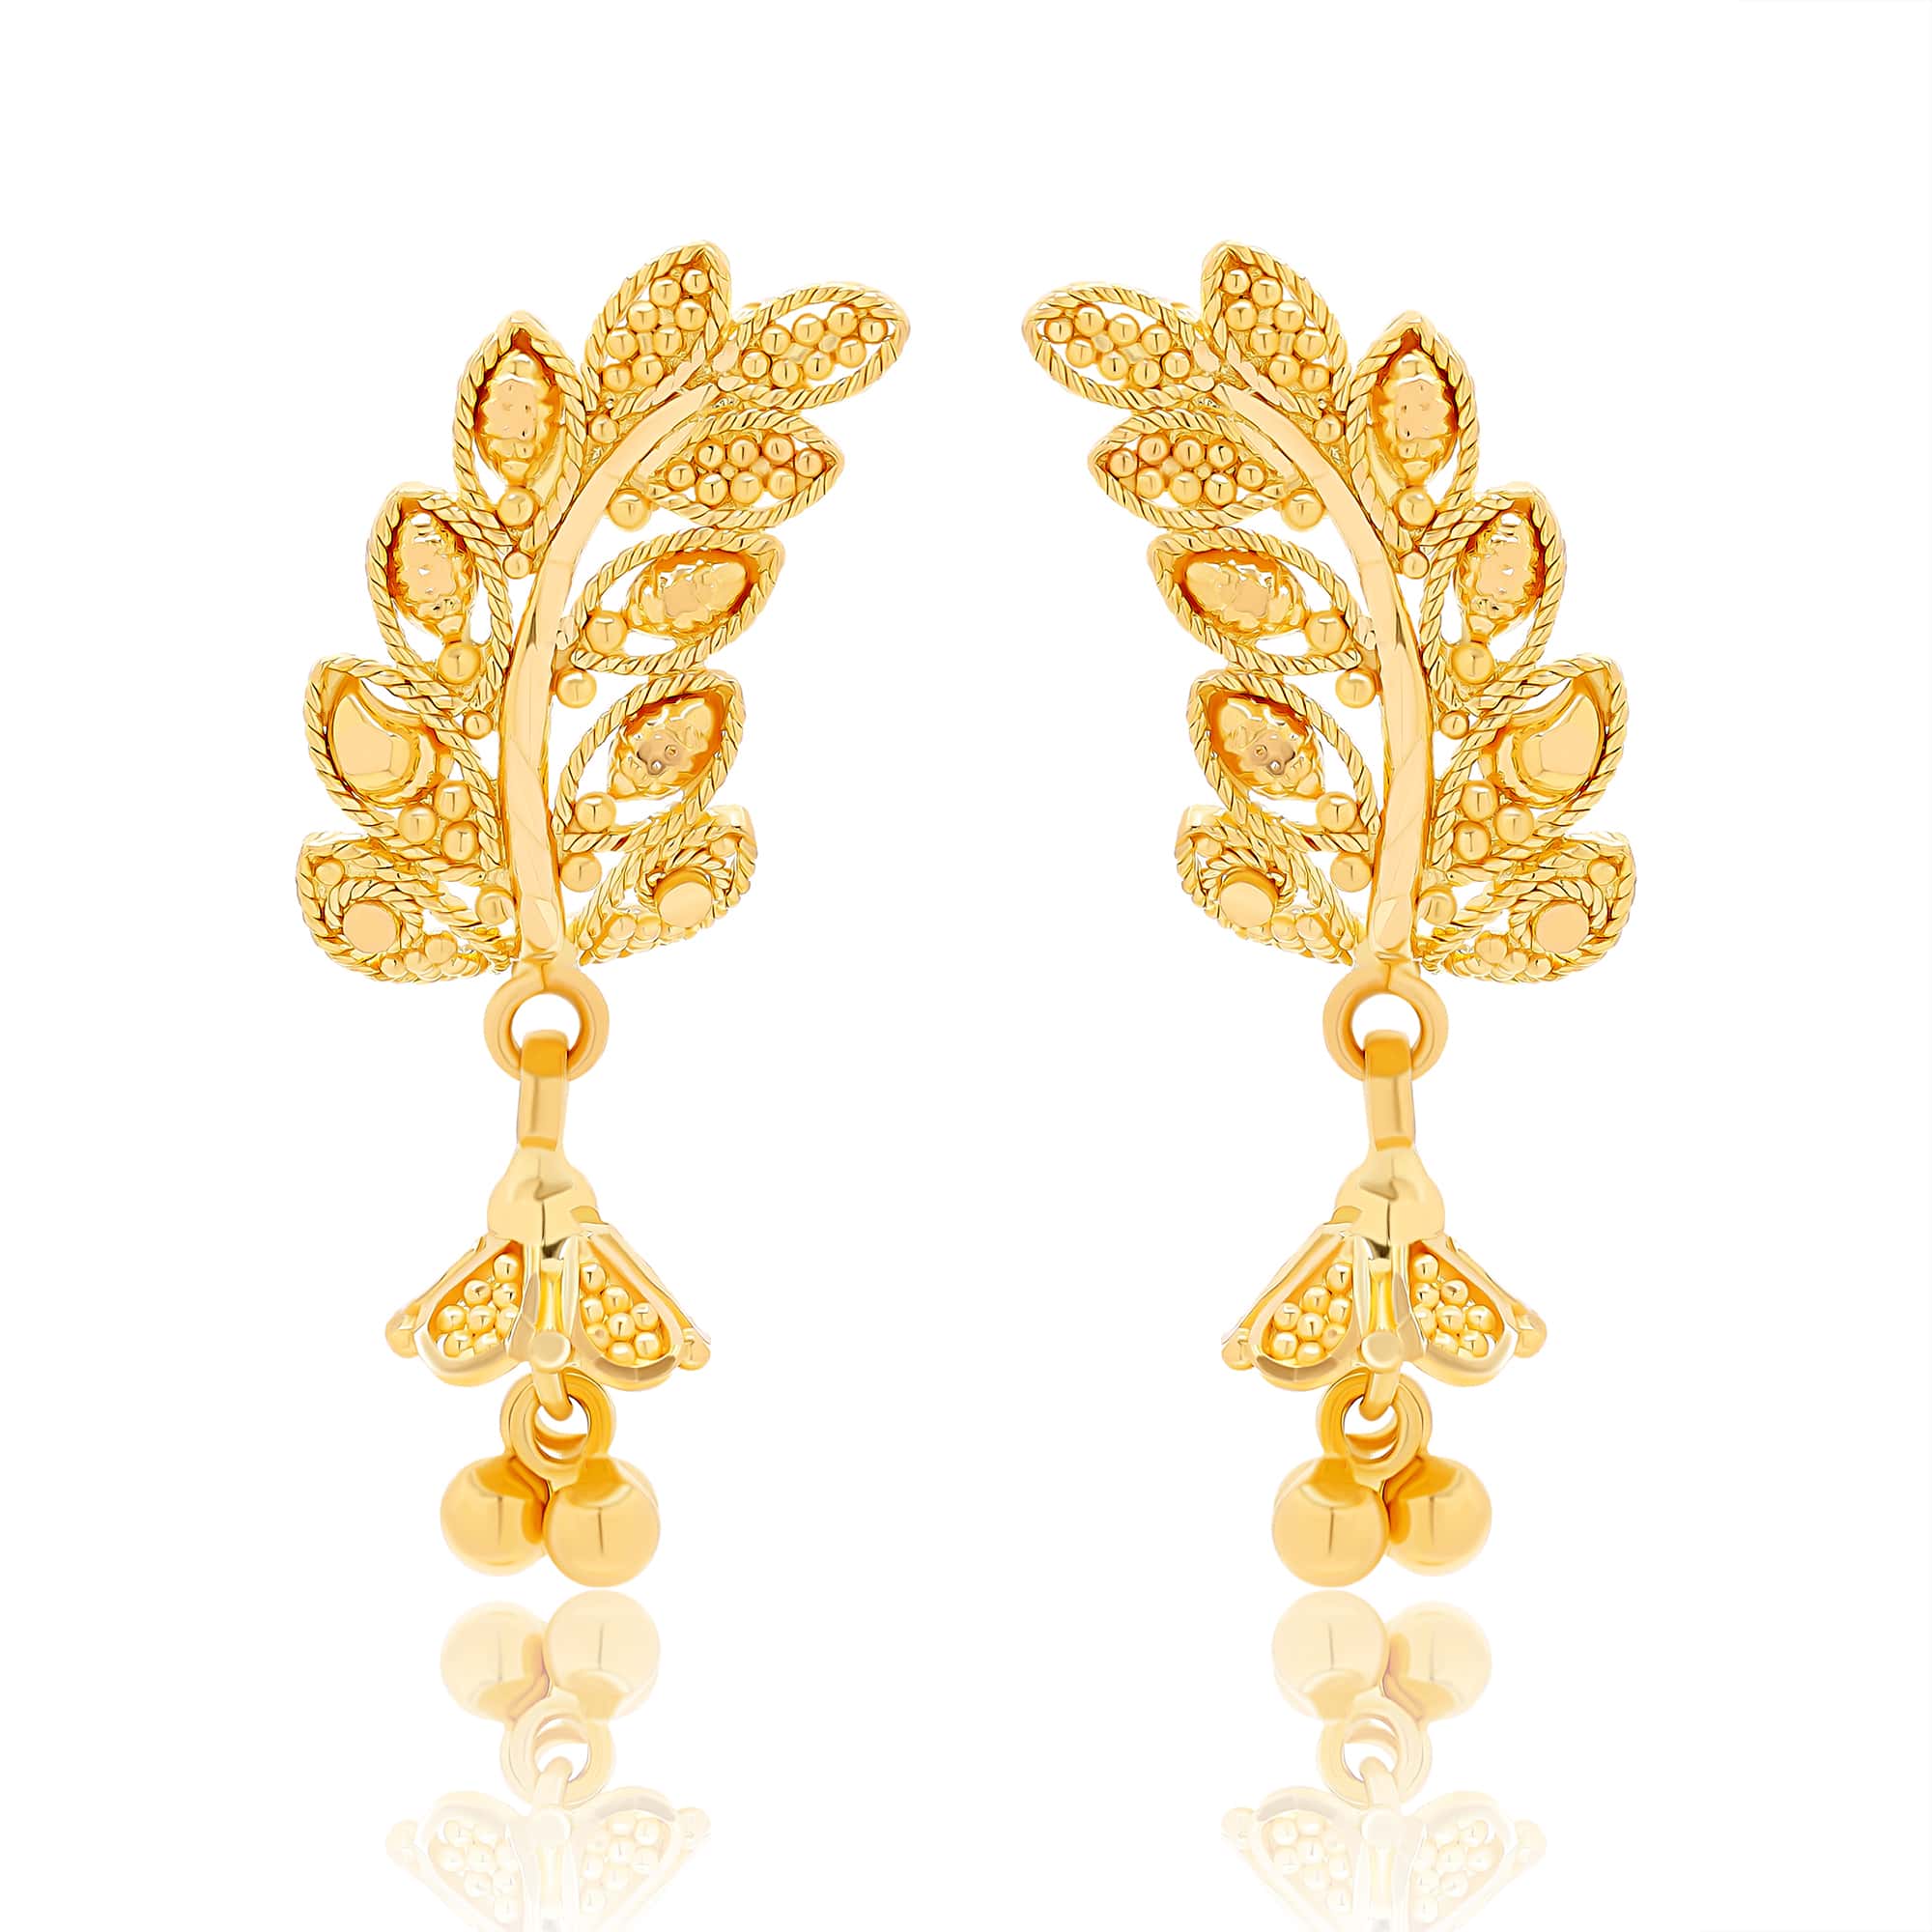 22K gold earrings